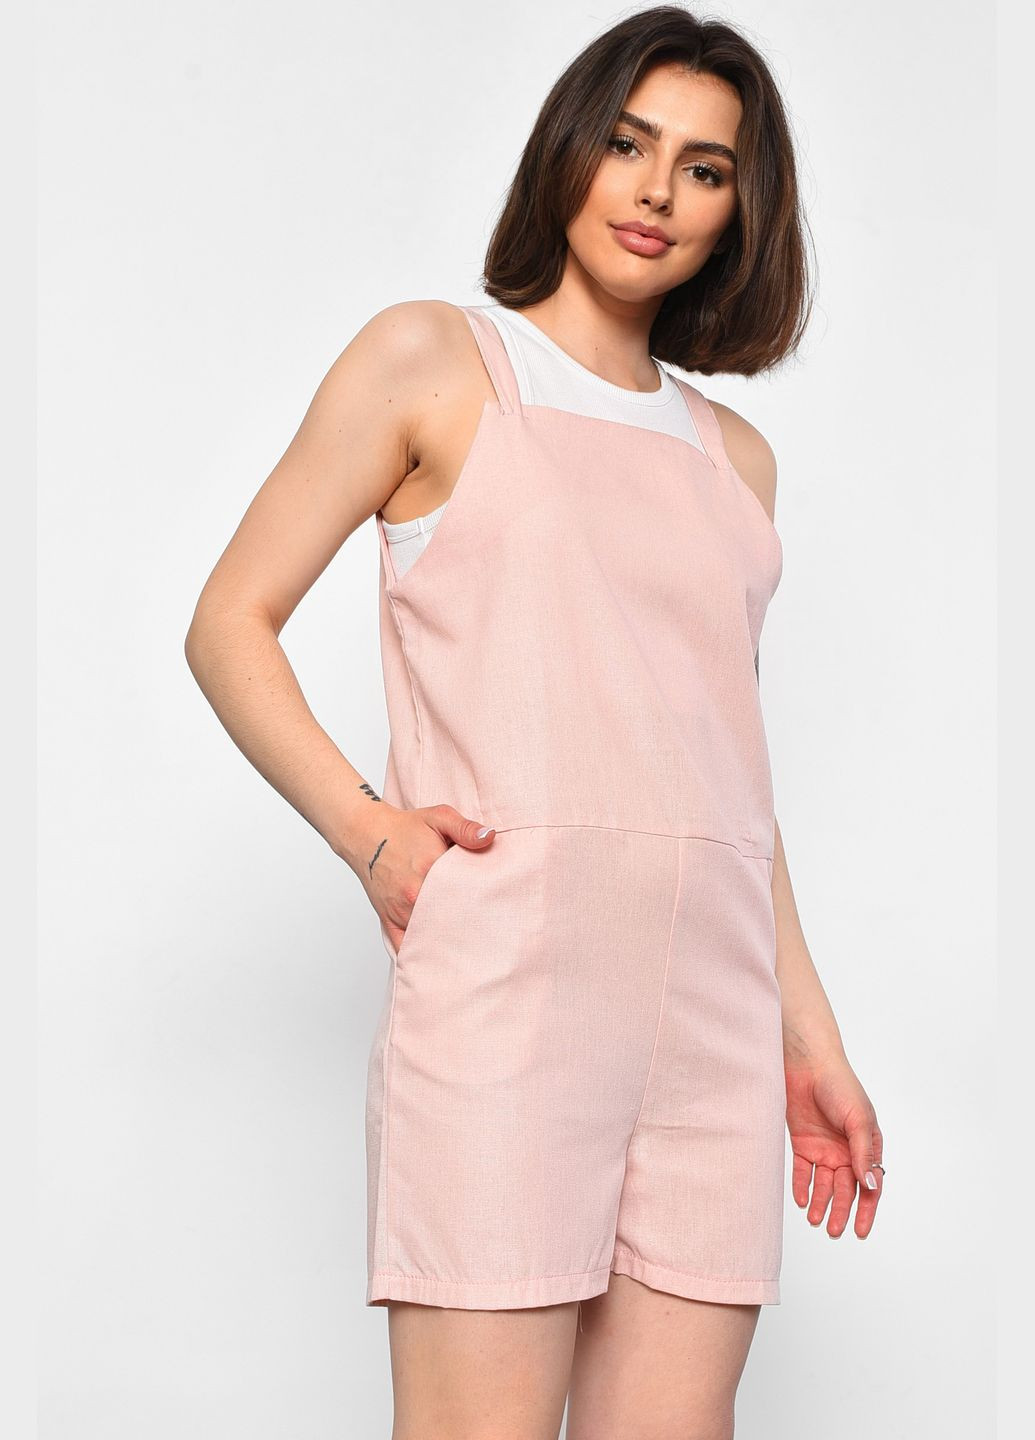 Комбинезон женский розового цвета Let's Shop комбинезон-шорты однотонный розовый пляжный лен